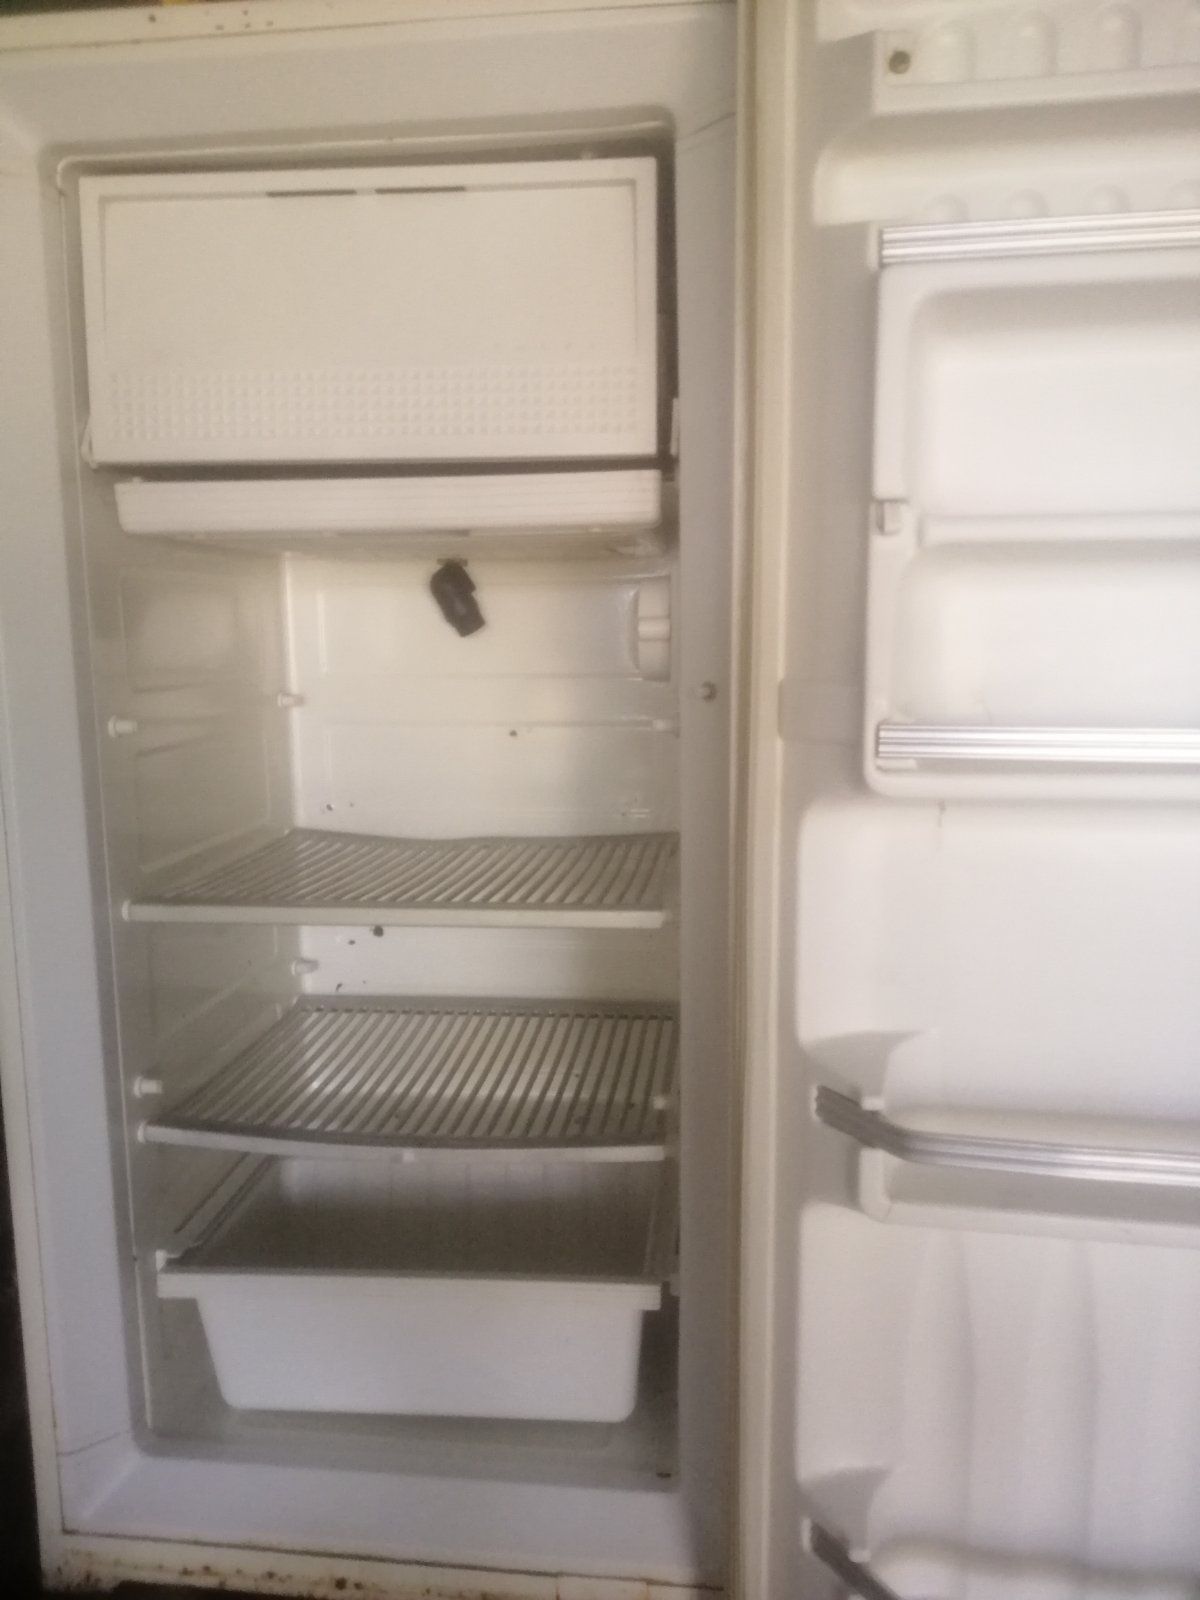 Холодильник в рабочем состоянии окаа3